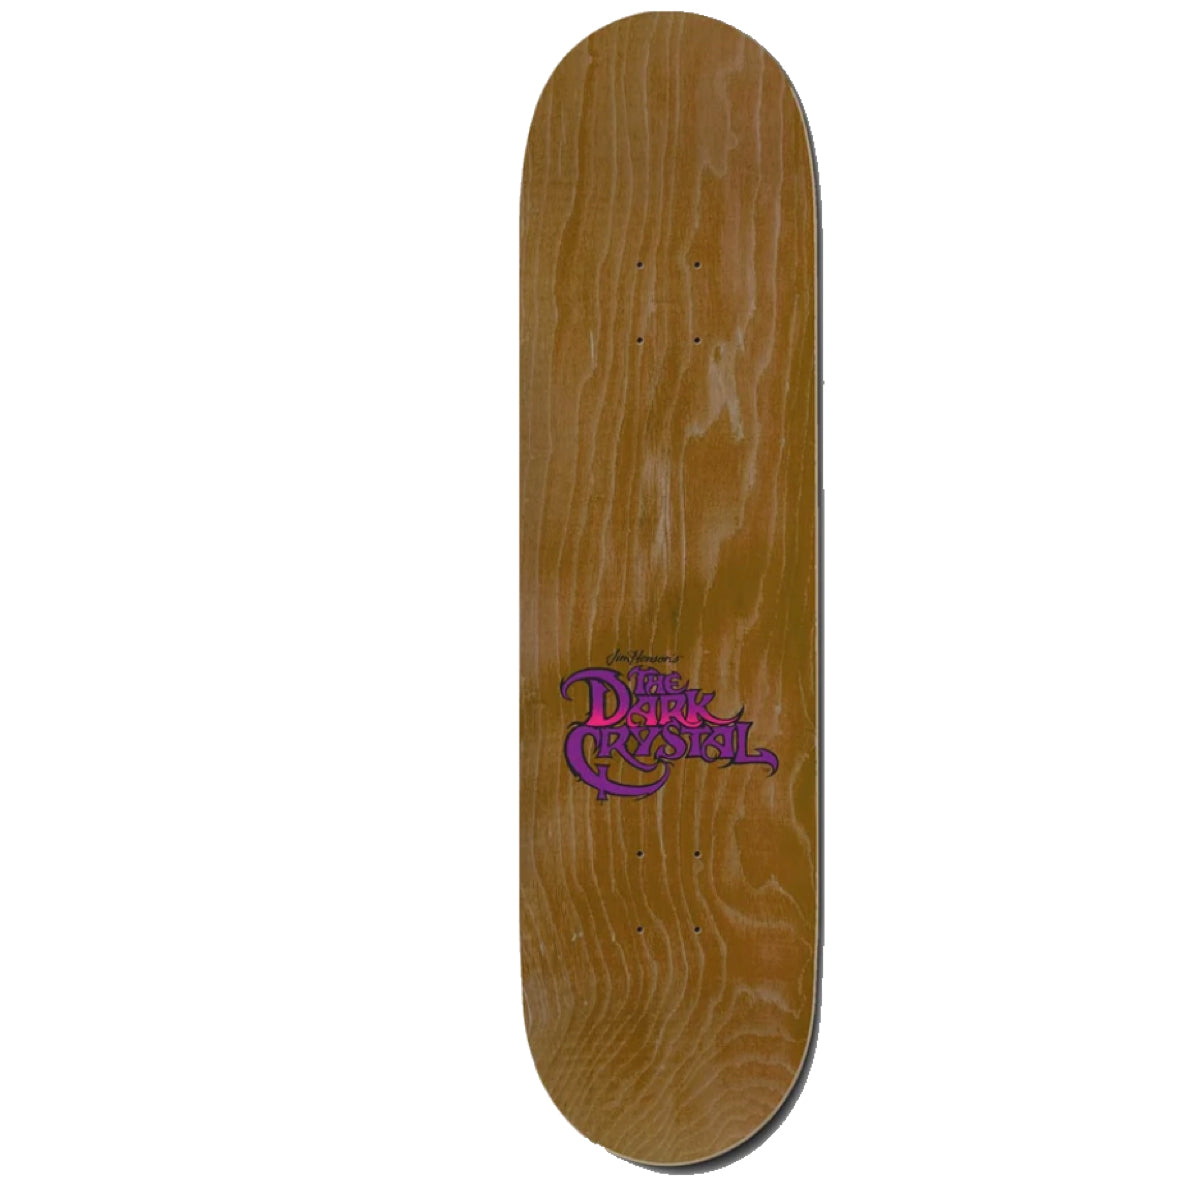 Madrid x Dark Chrystal Mystic Skateboard Deck